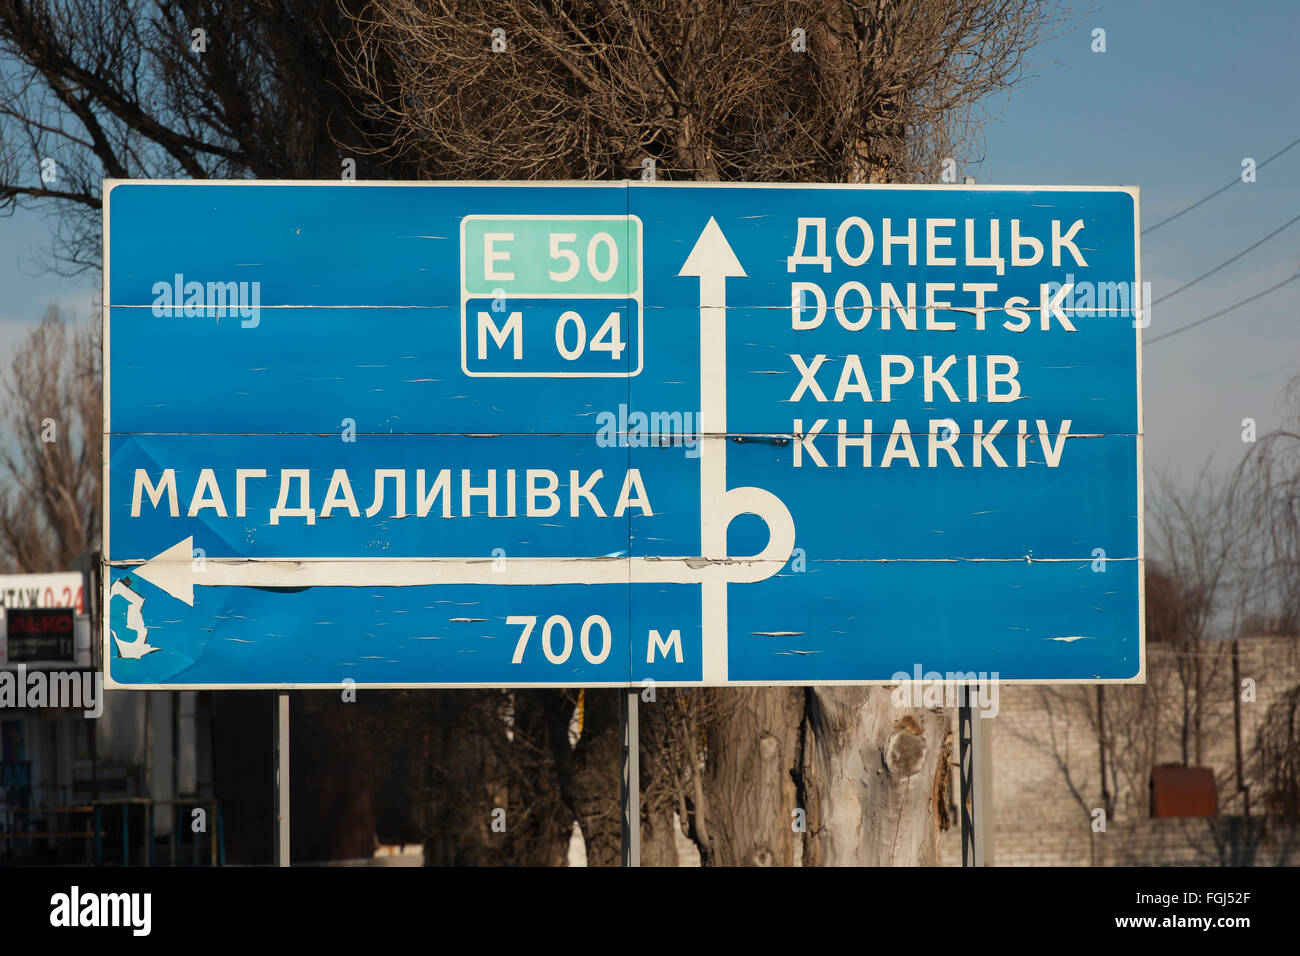 Dnepropetrovsk, Ukraine - 7. Februar 2016: Ein Schild mit den Worten: Donezk, Harkov (Charkiw) Fotografie ergriffen wurden während der Fahrt, Bewegungsunschärfe Stockfoto